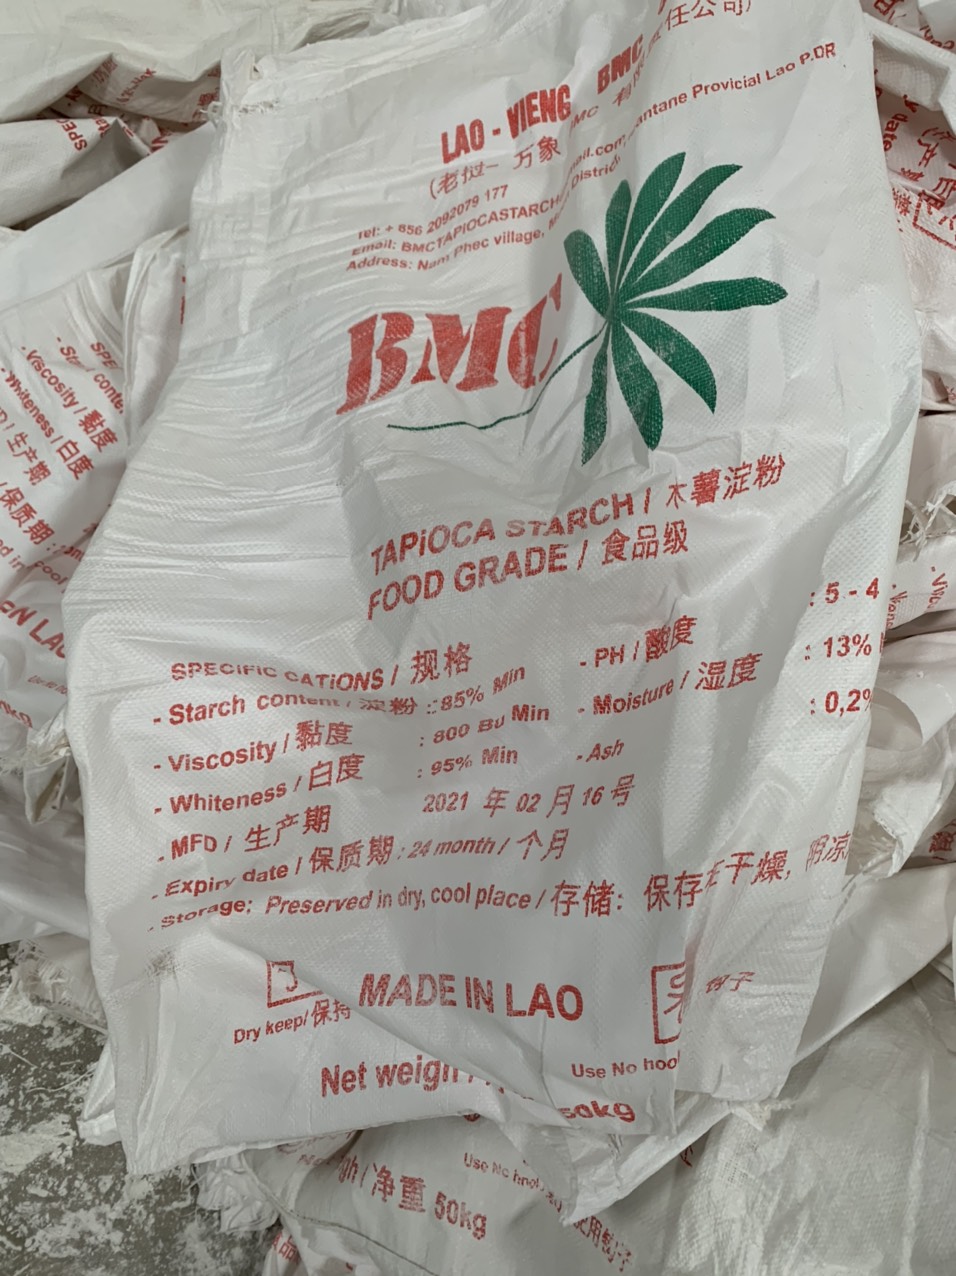 Bao bì tinh bột sắn mang nhãn hiệu BMC -Made in Lao đã bị thu giữ.